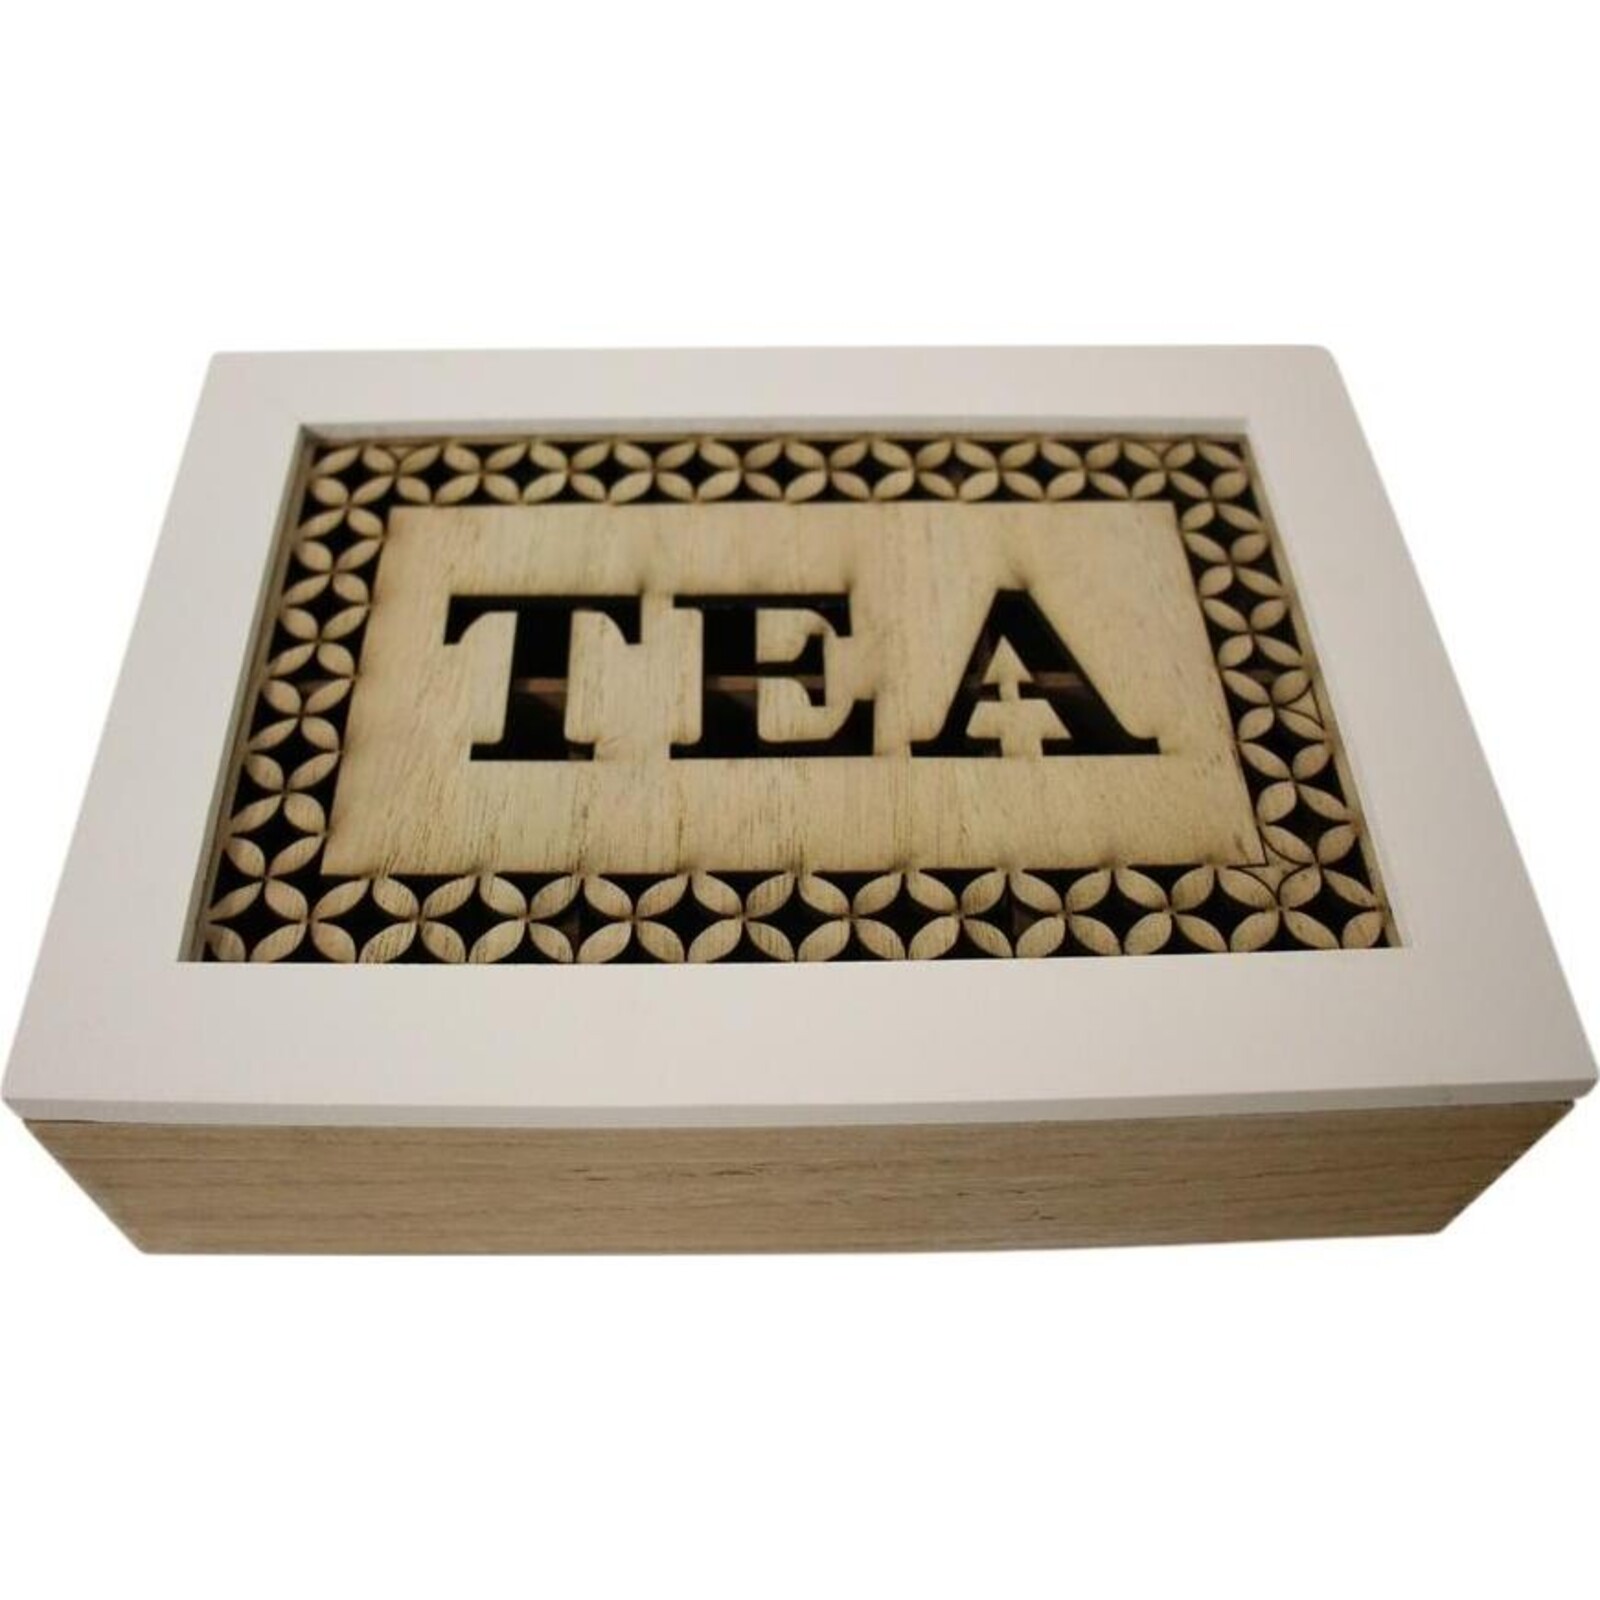 Box Tea Stamp Lrg